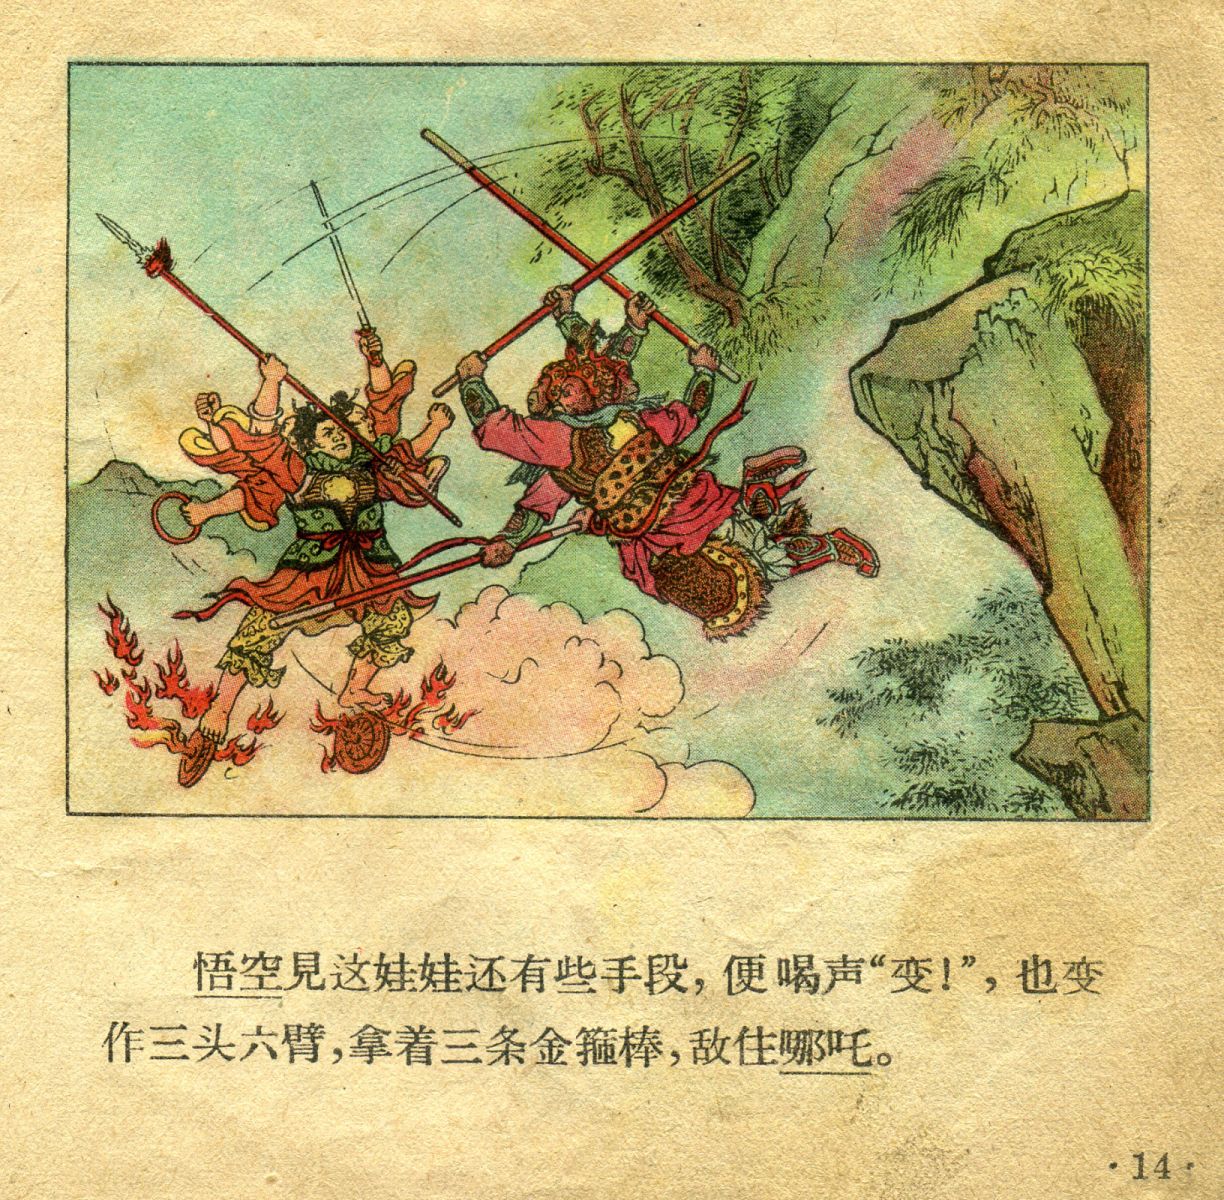 1956年彩色连环画《孙悟空大闹天宫》董天野 绘